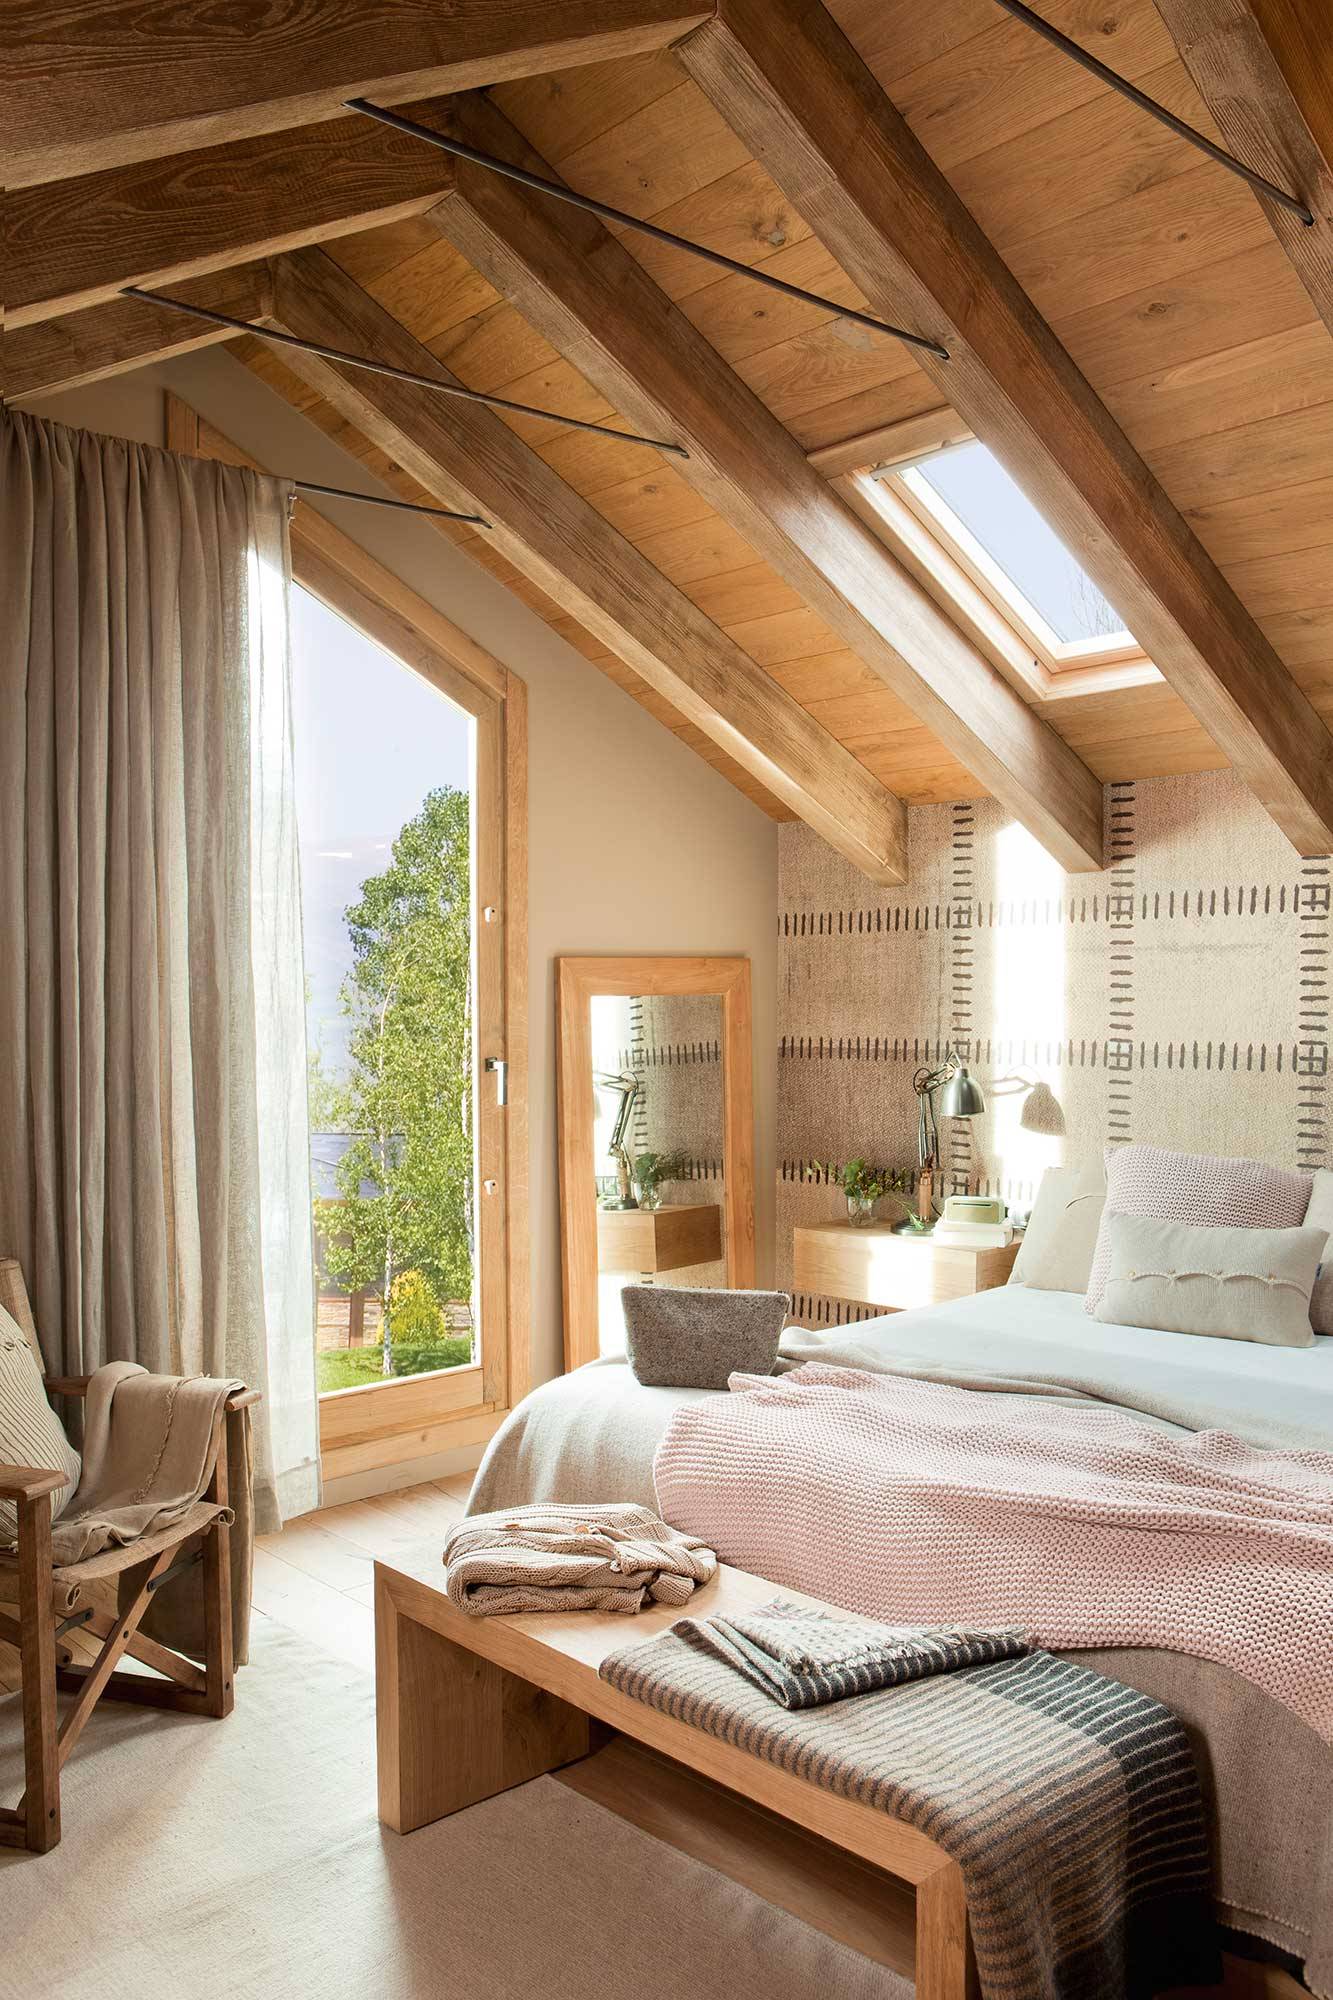 Dormitorio con vigas en el techo de madera.